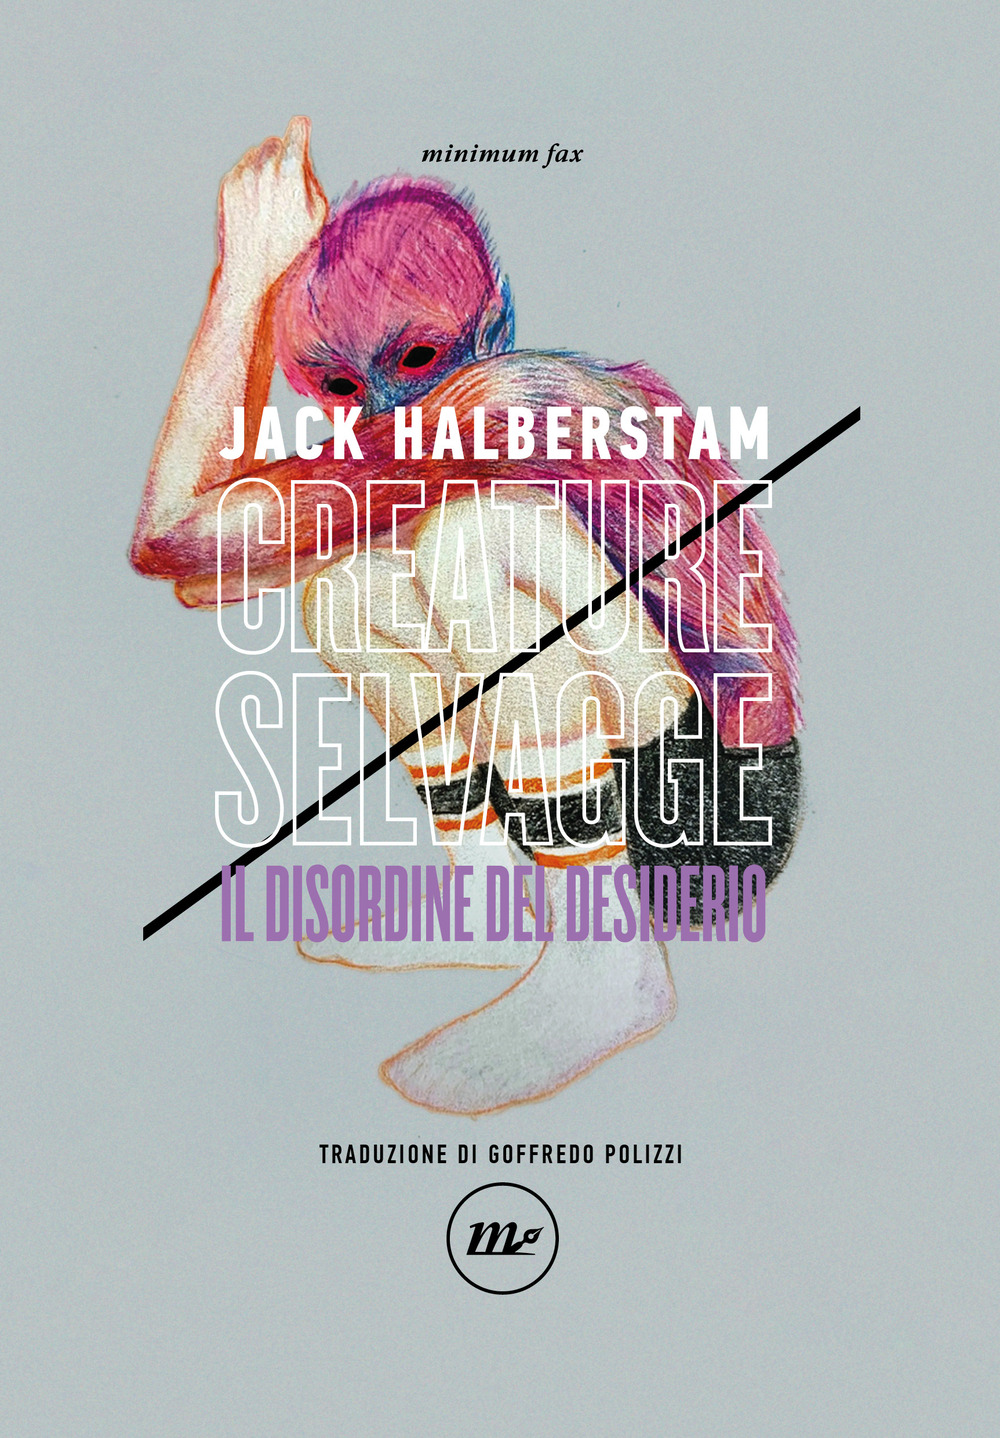 Libri Halberstam Jack - Creature Selvagge. Il Disordine Del Desiderio NUOVO SIGILLATO, EDIZIONE DEL 29/09/2023 SUBITO DISPONIBILE